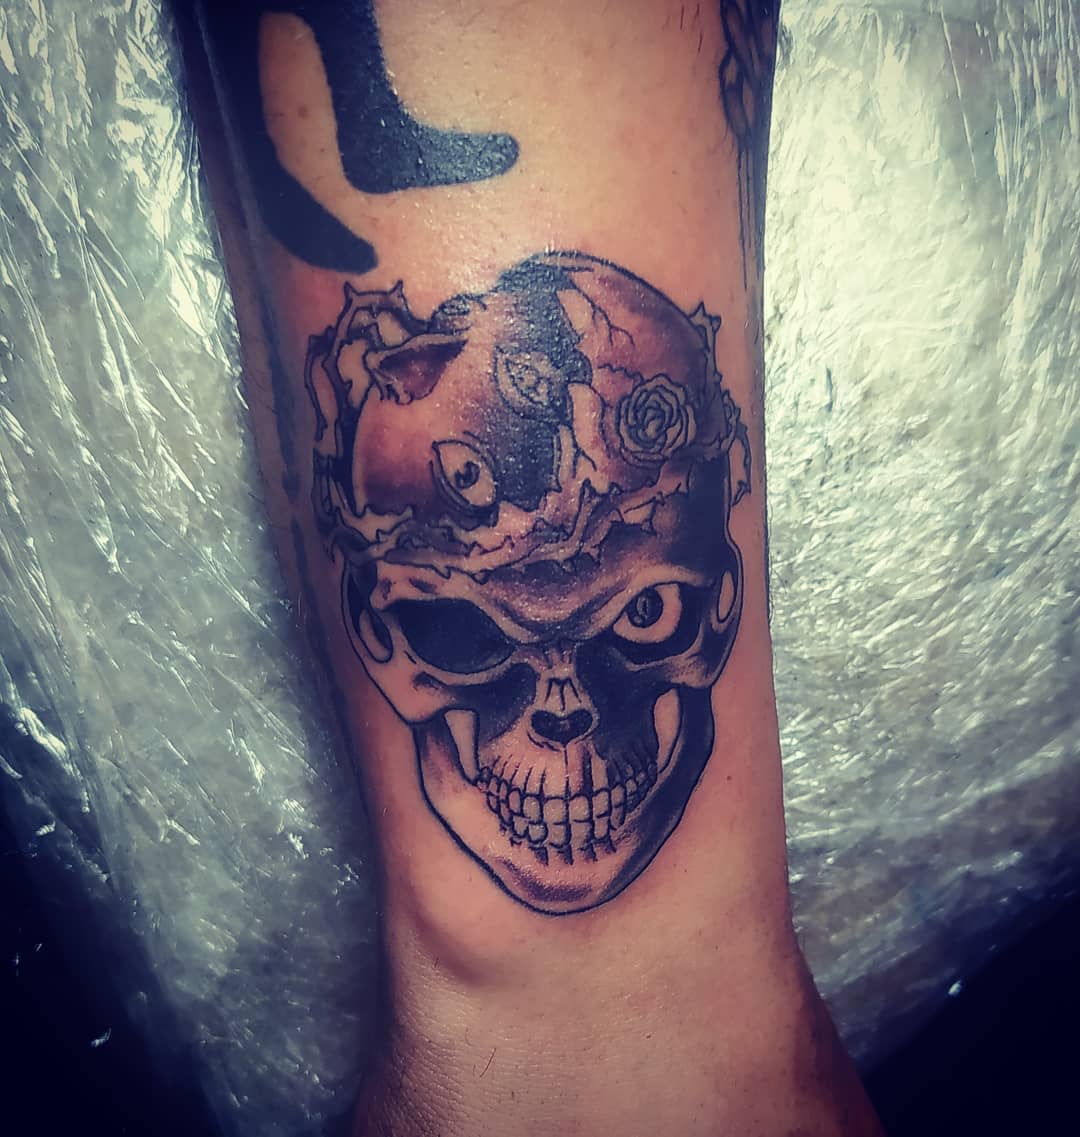 Tatuaje Berserk Skull Knight -j_manuel.21